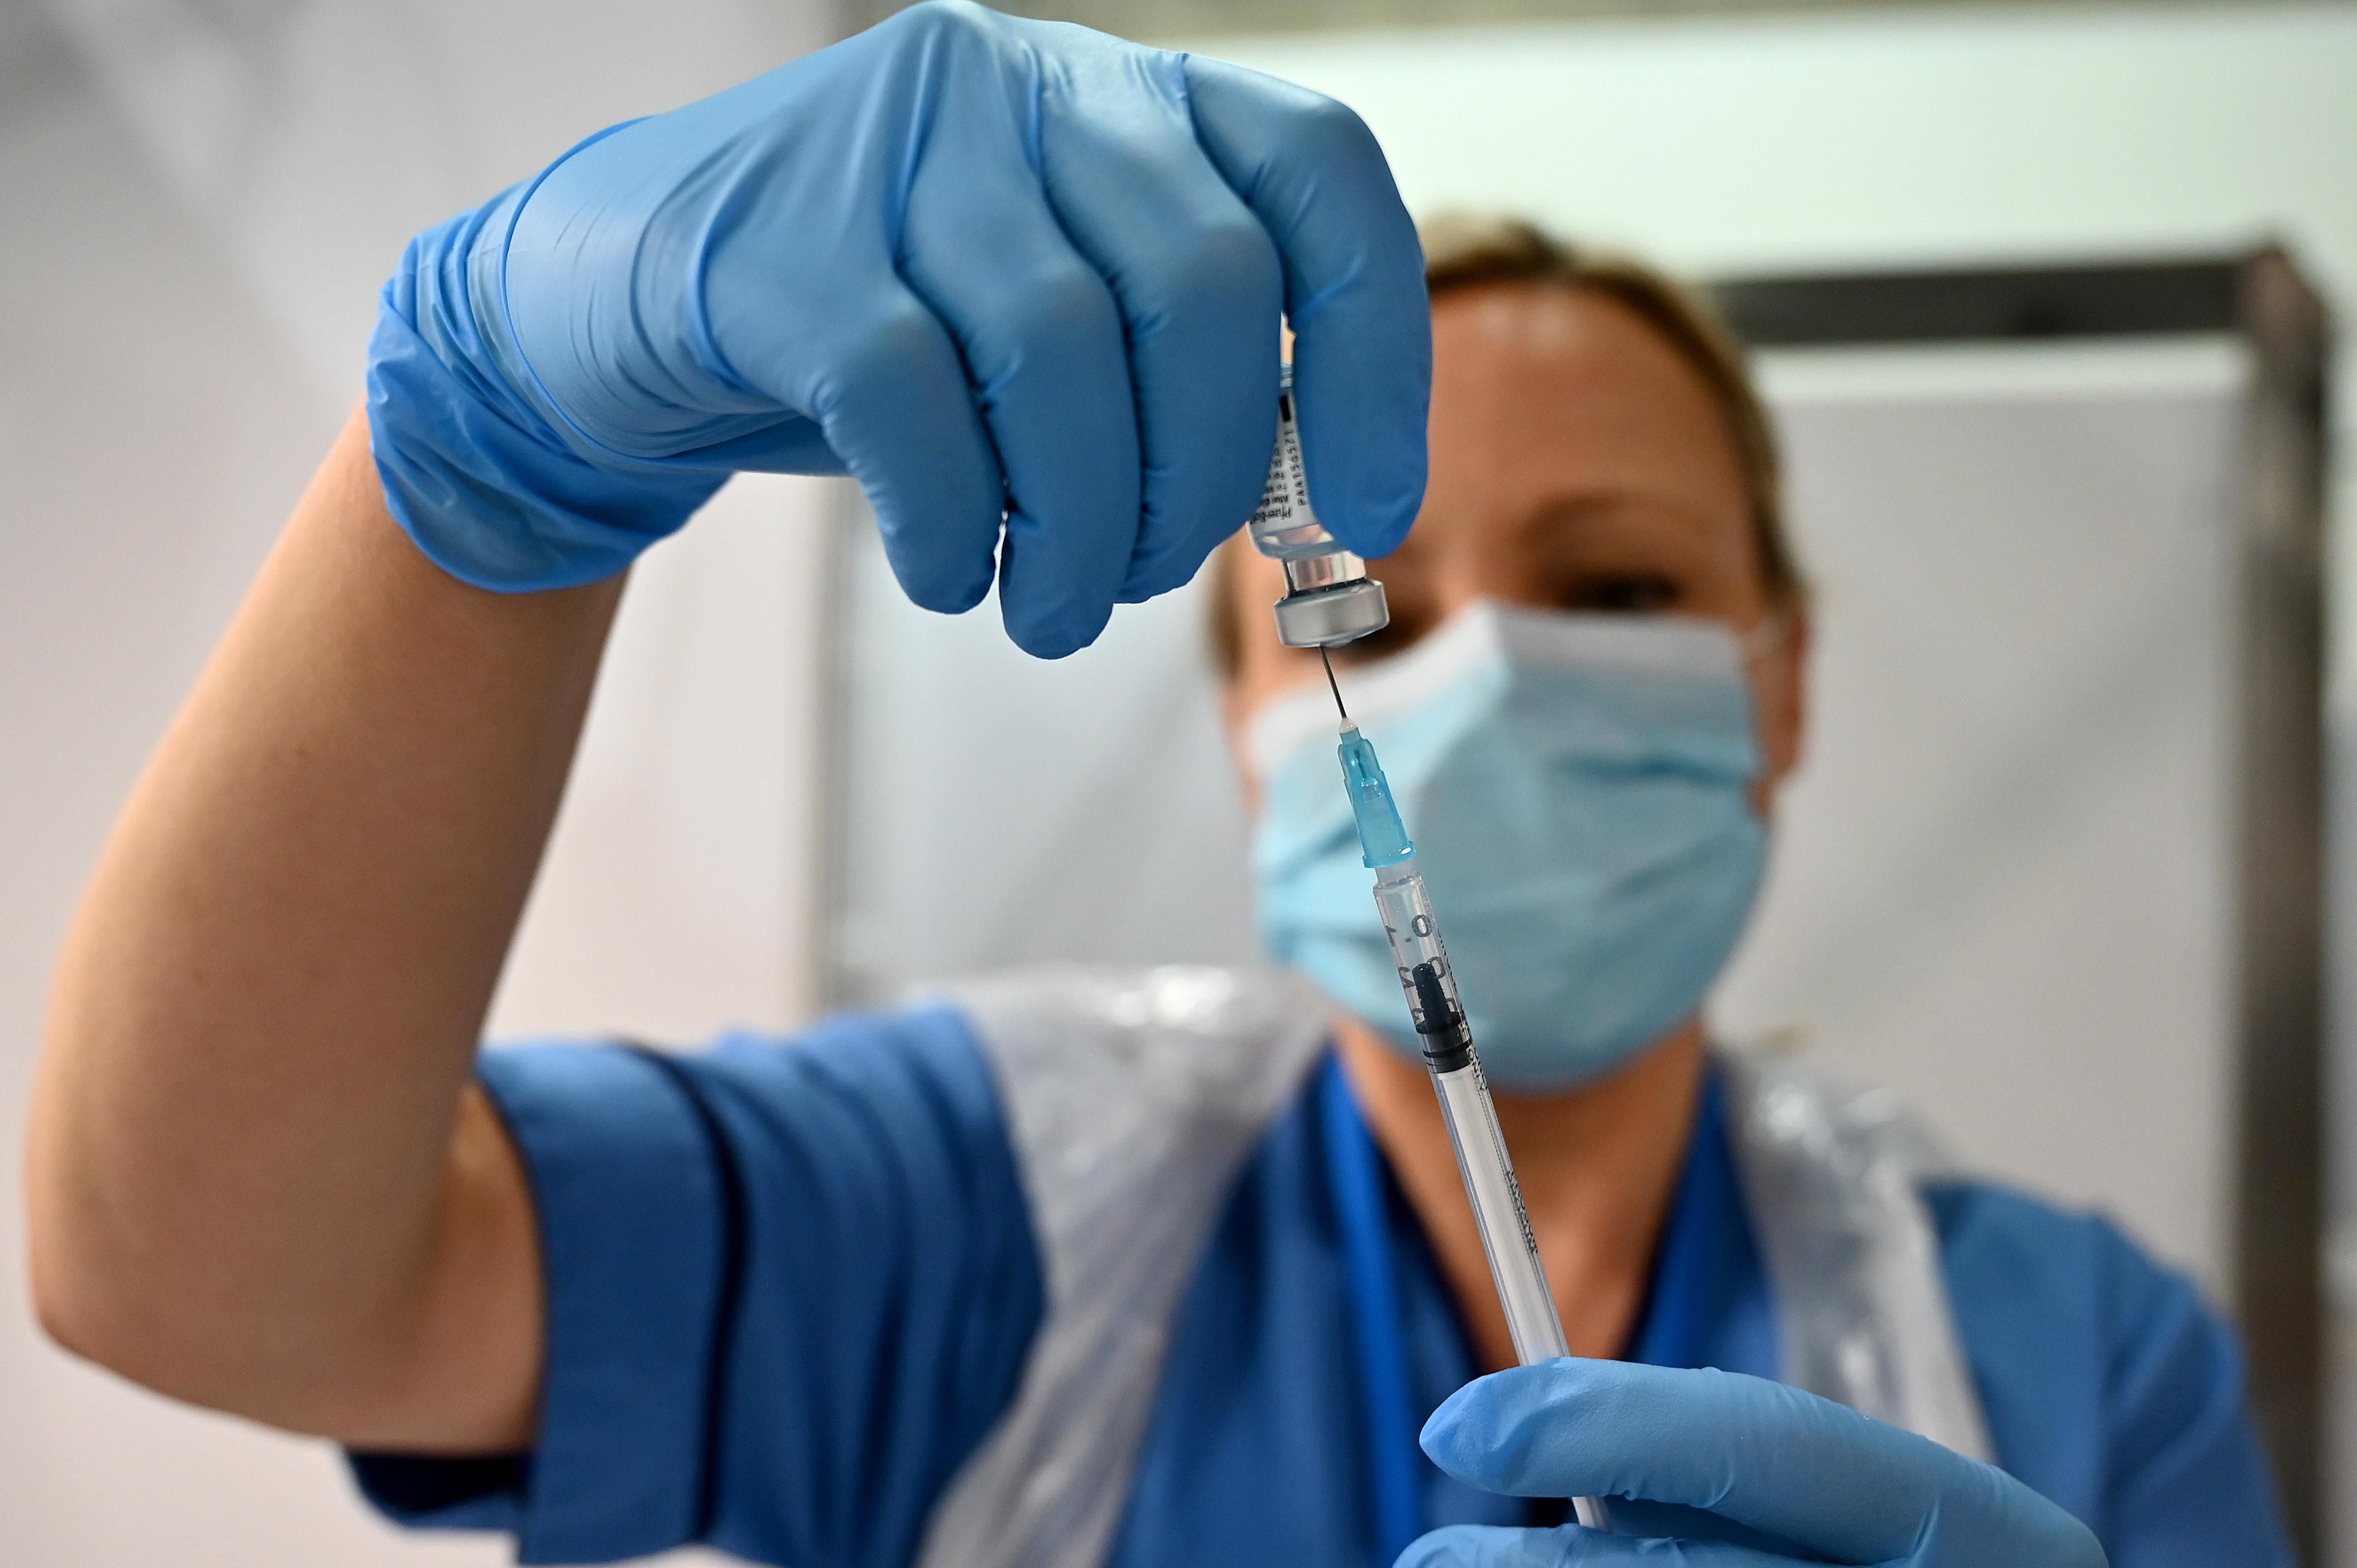 Более 1,6 миллиона прививок сделали за первую неделю ноября, – Минздрав